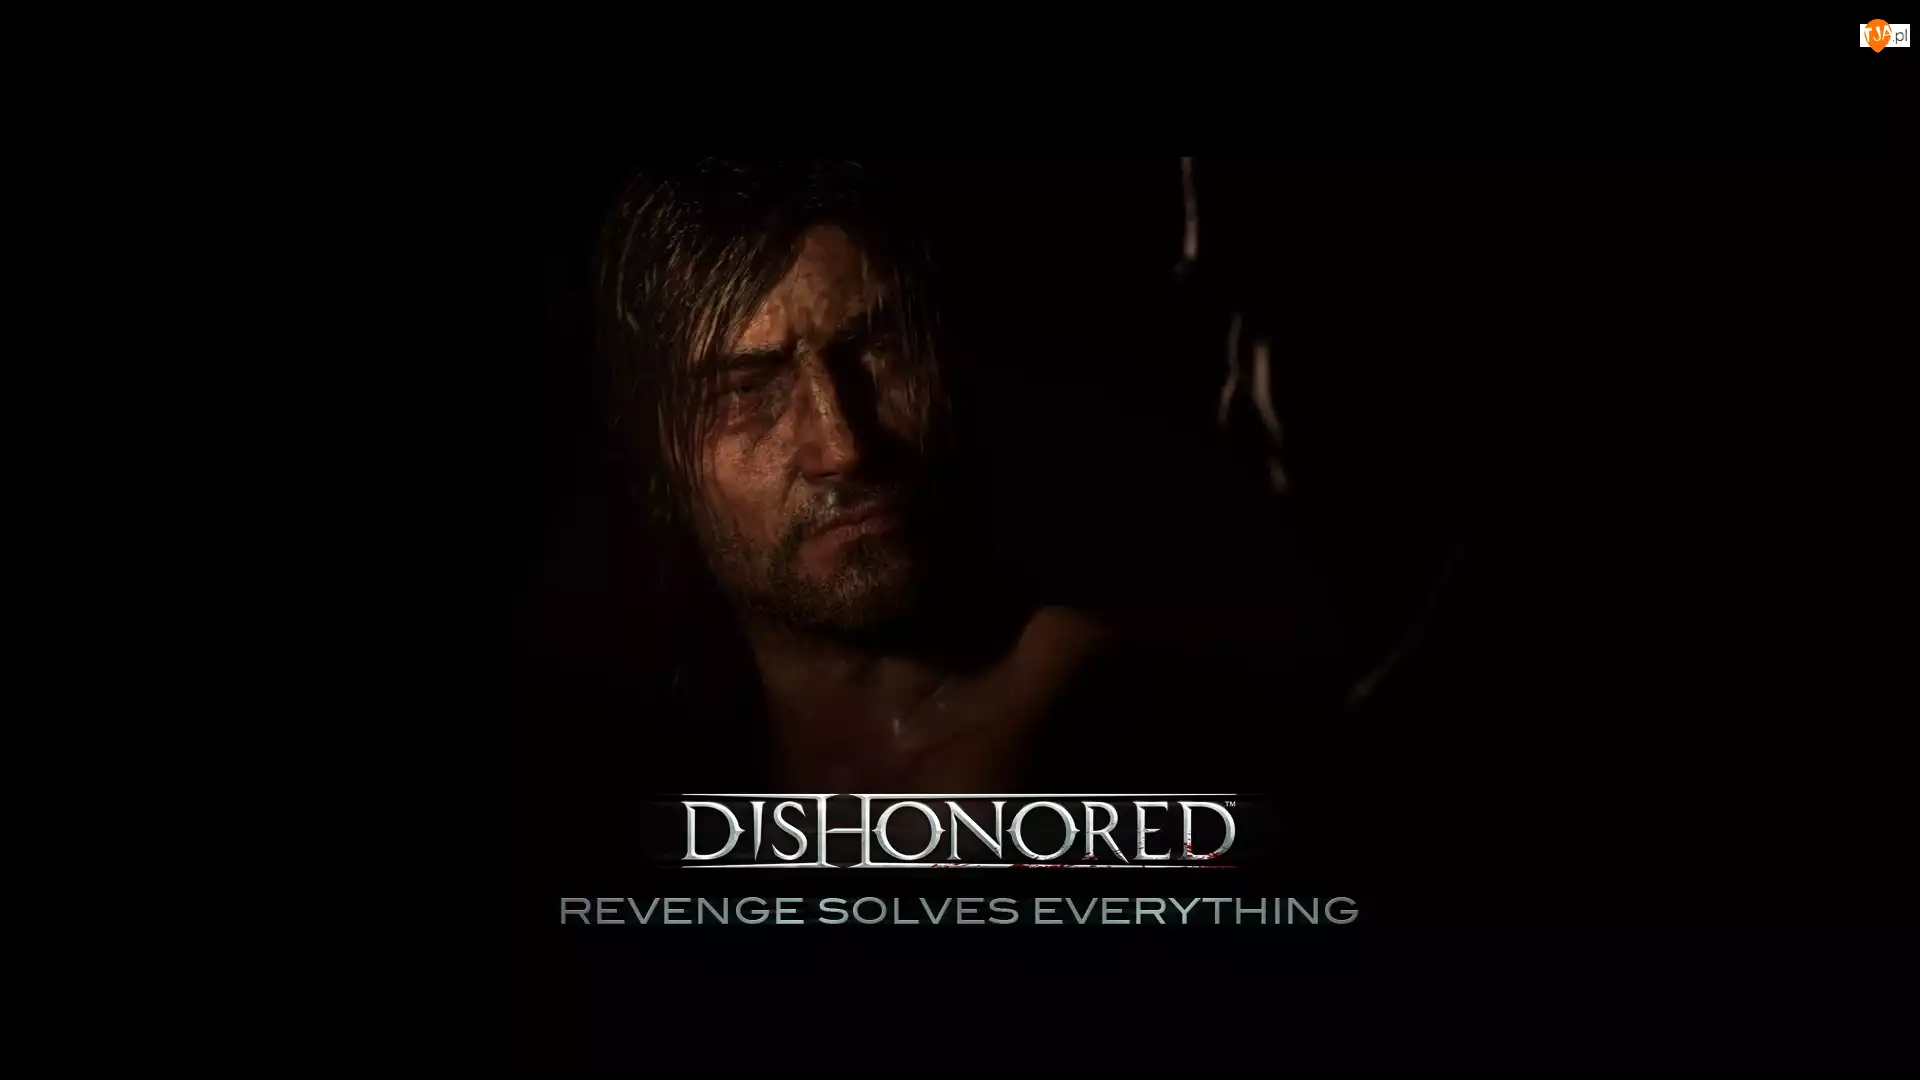 Corvo, Dishonored